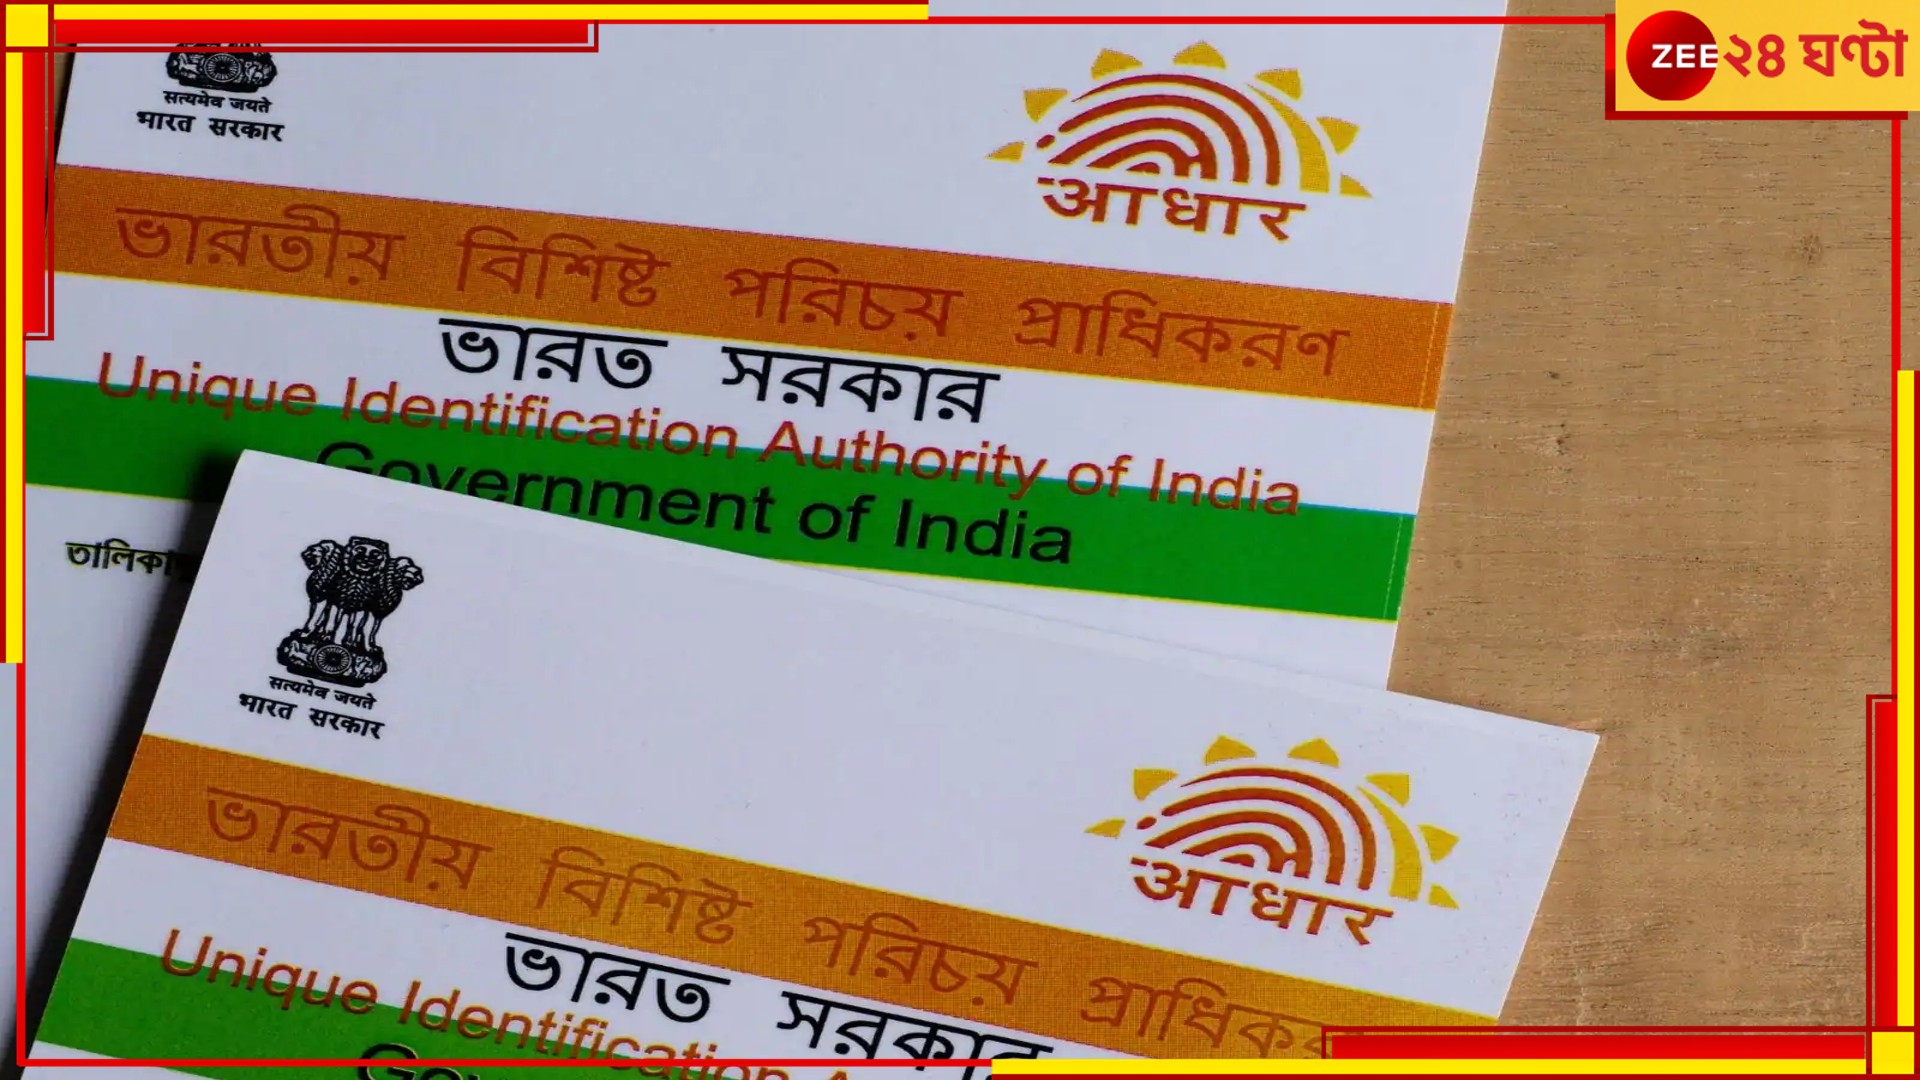 Aadhaar Card Deactivated: বাতিল আধার কার্ড! চিঠি পেয়েই আতঙ্কে বাংলার বাসিন্দারা